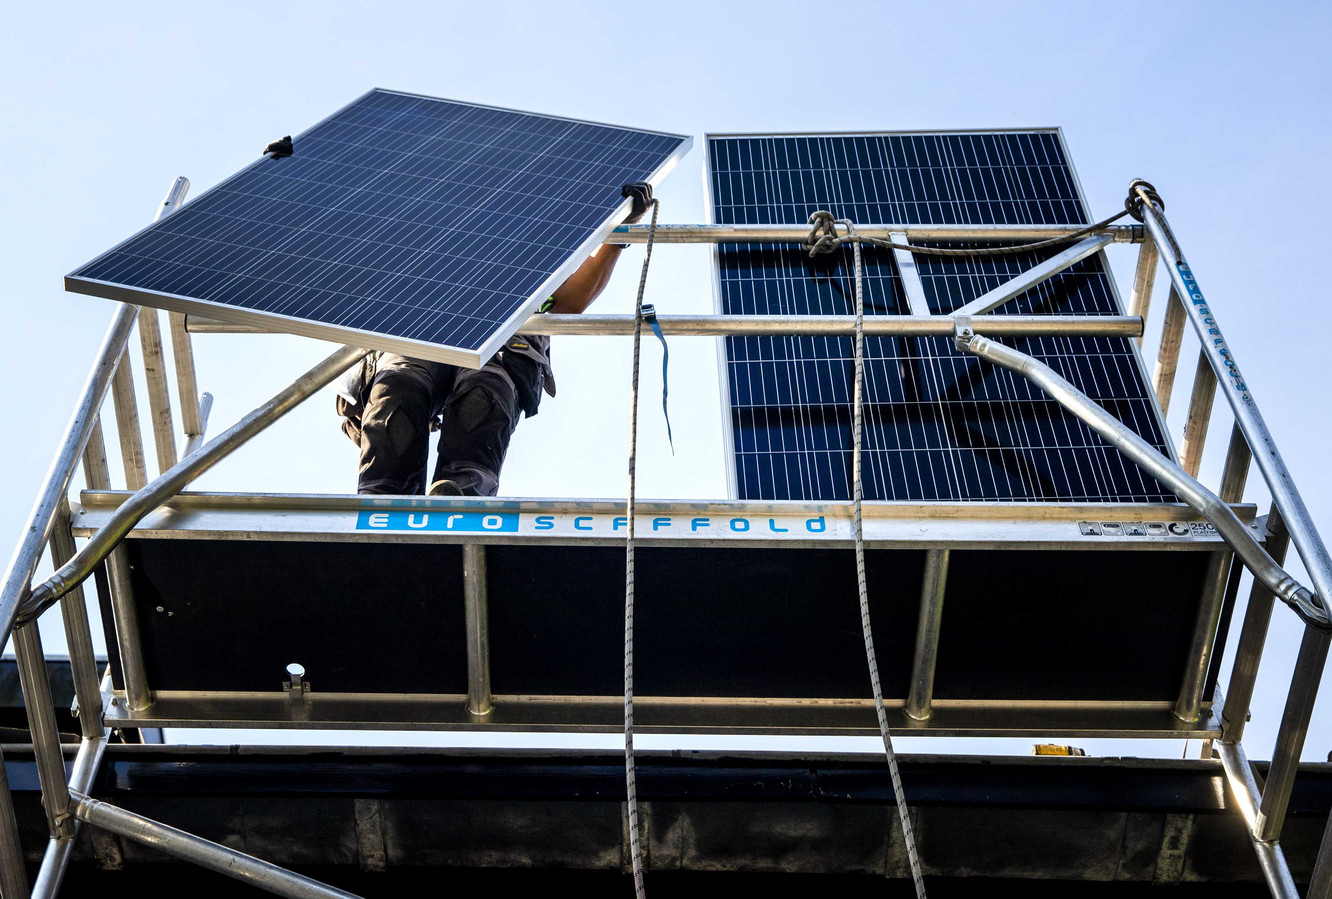 Met zonnepanelen is resultaat geboekt. De vraag is nu hoe de volgende, grote stappen gezet kunnen worden.